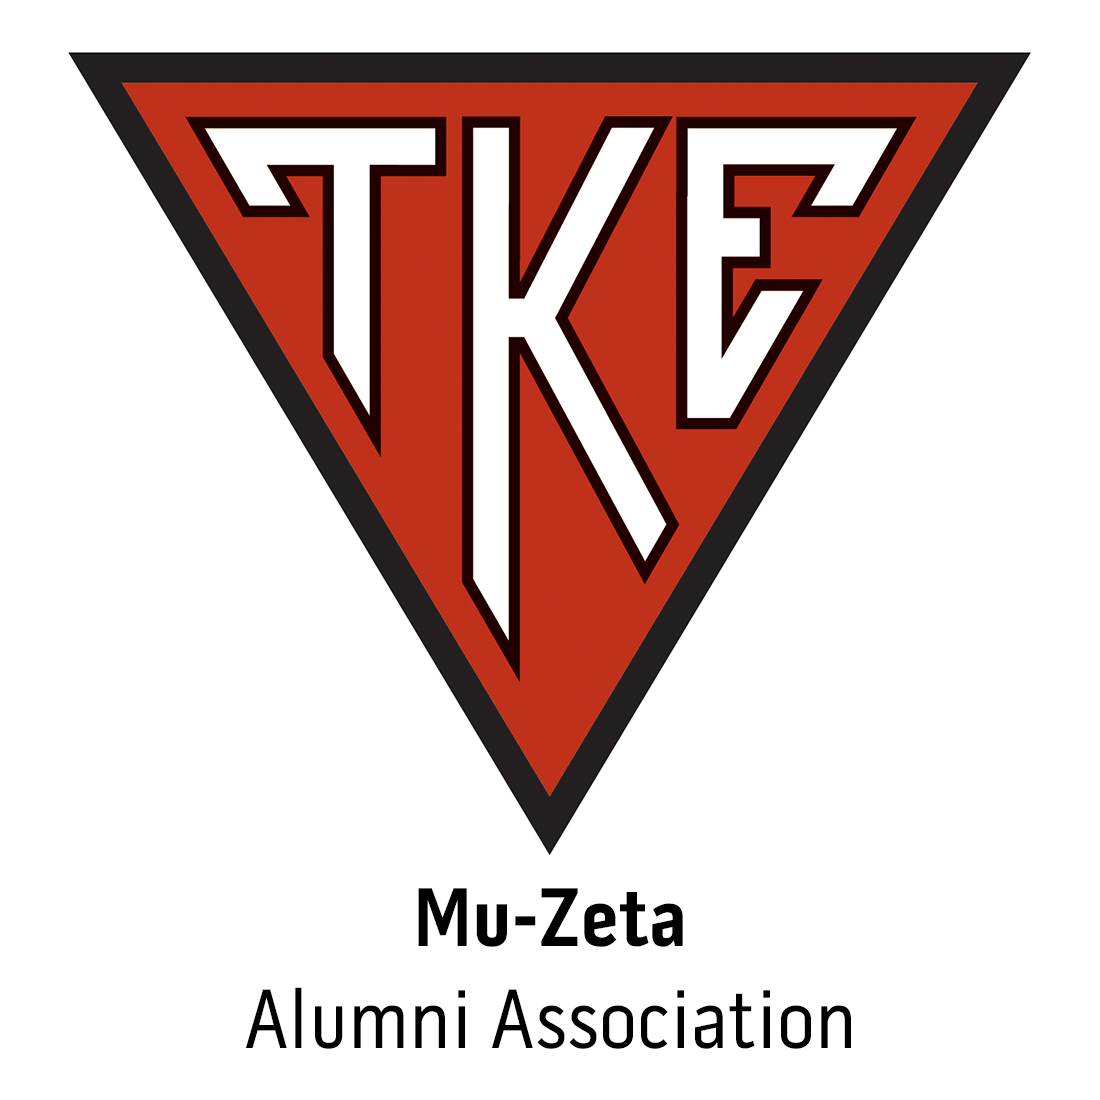 Mu-Zeta Alumni Association at Nicholls State University